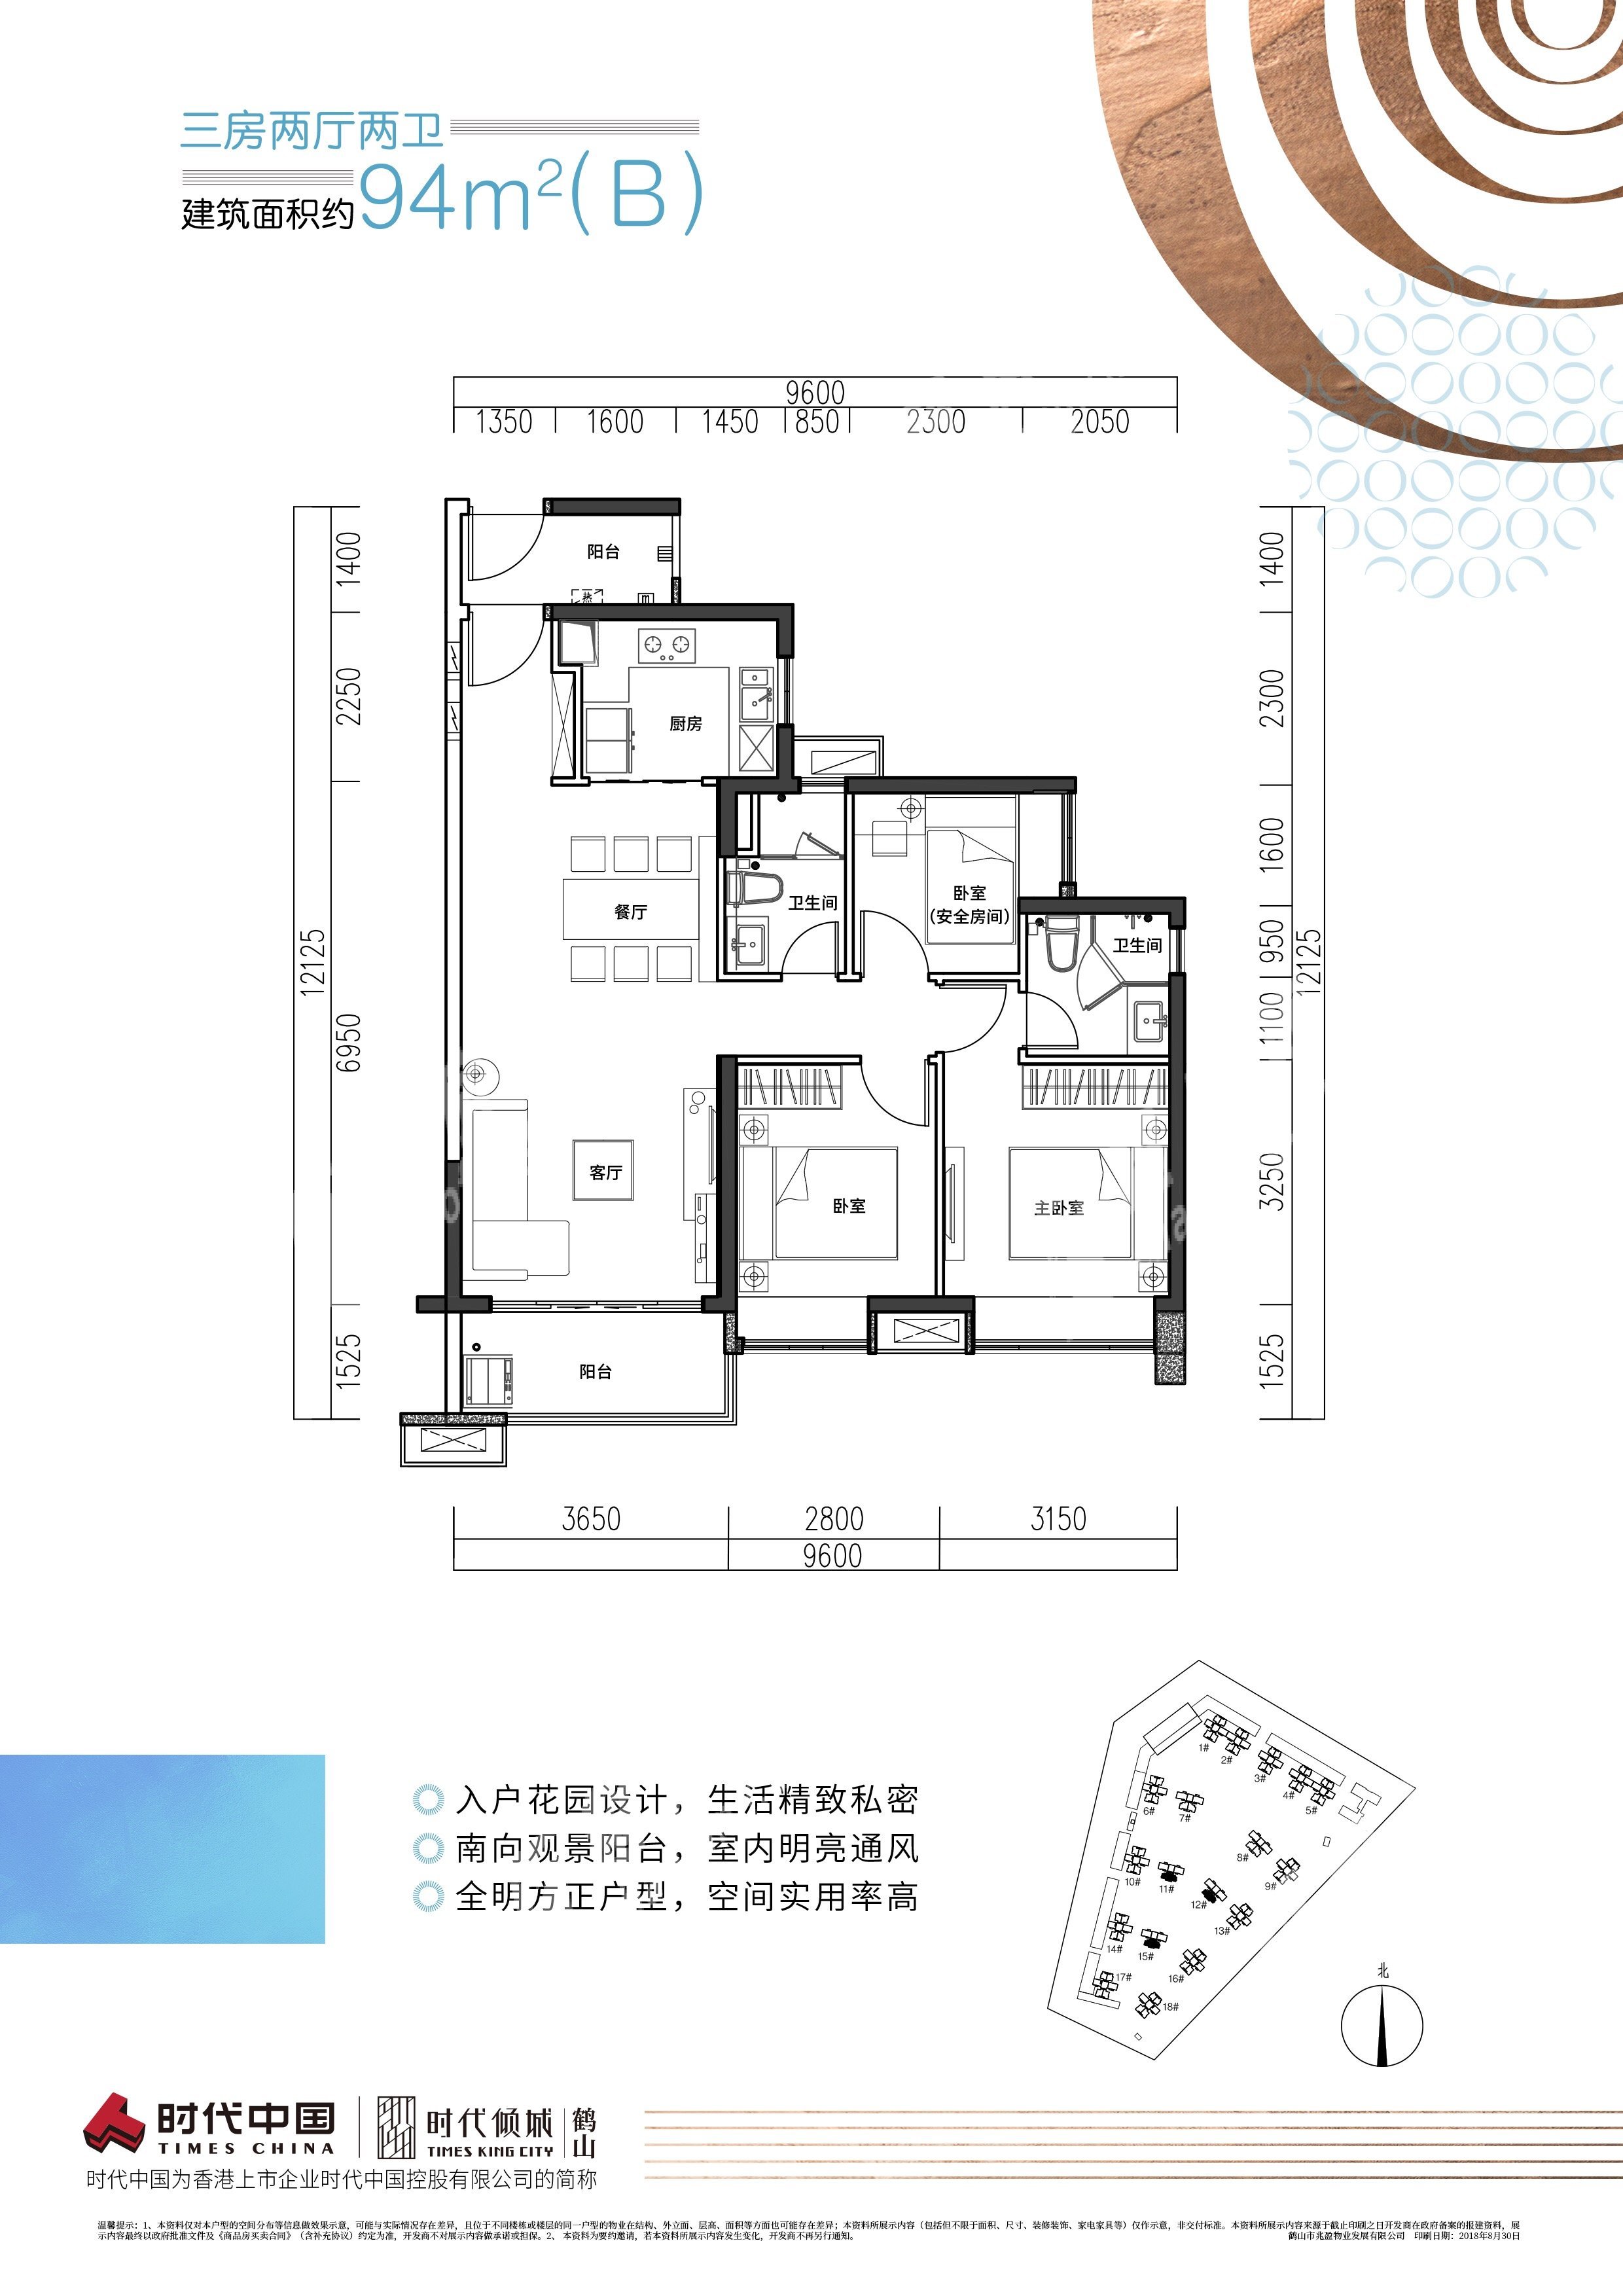 鹤山时代倾城（新房）新房94房（B）户型 3室2厅2卫户型图